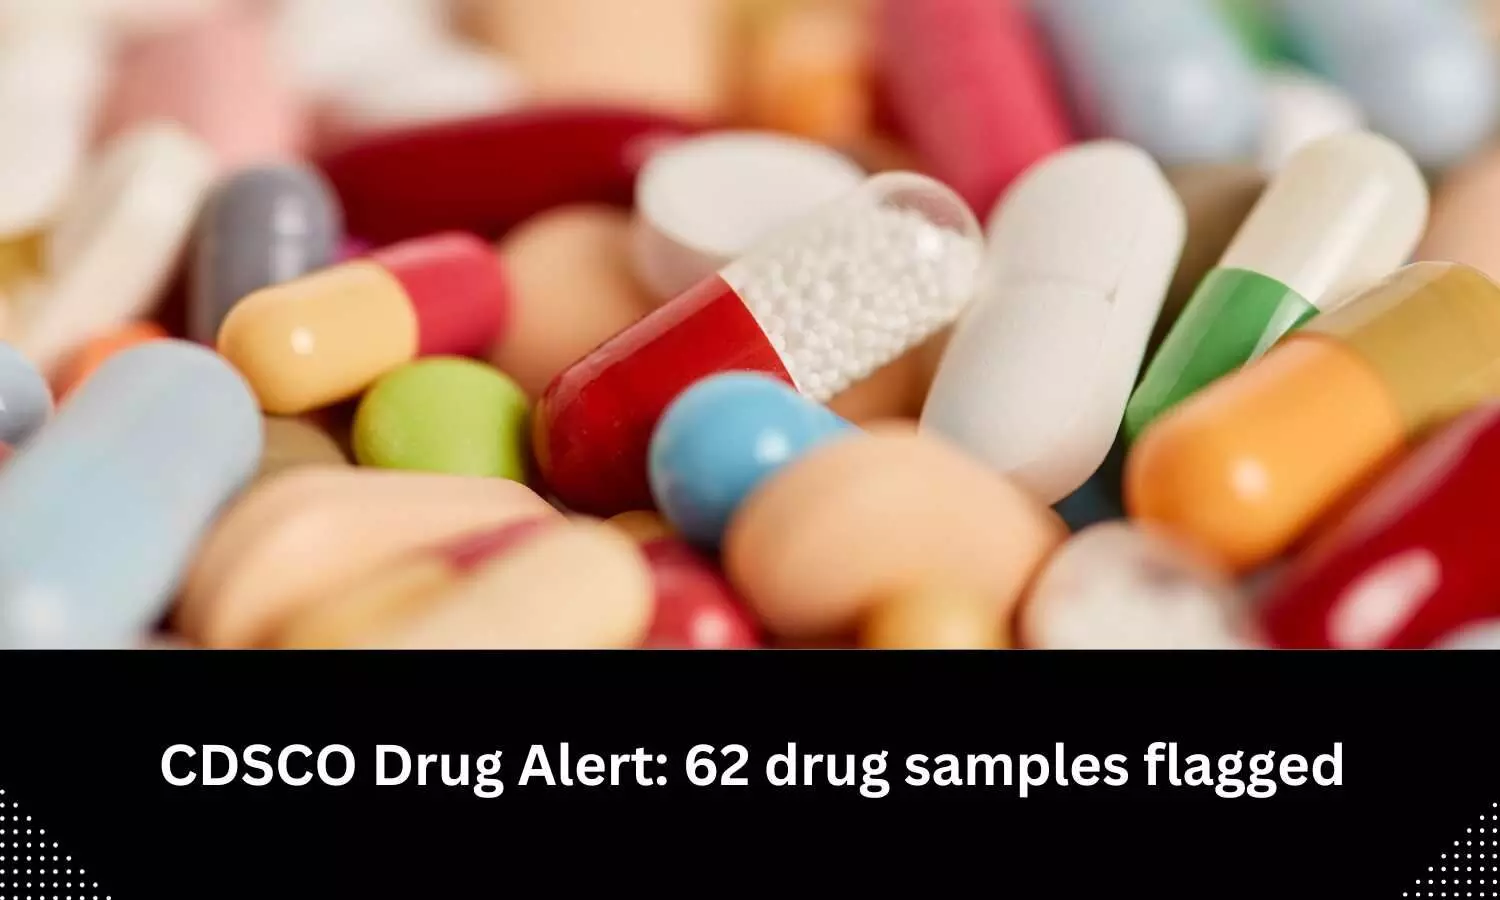 Drug alert: CDSCO flags 62 drug samples